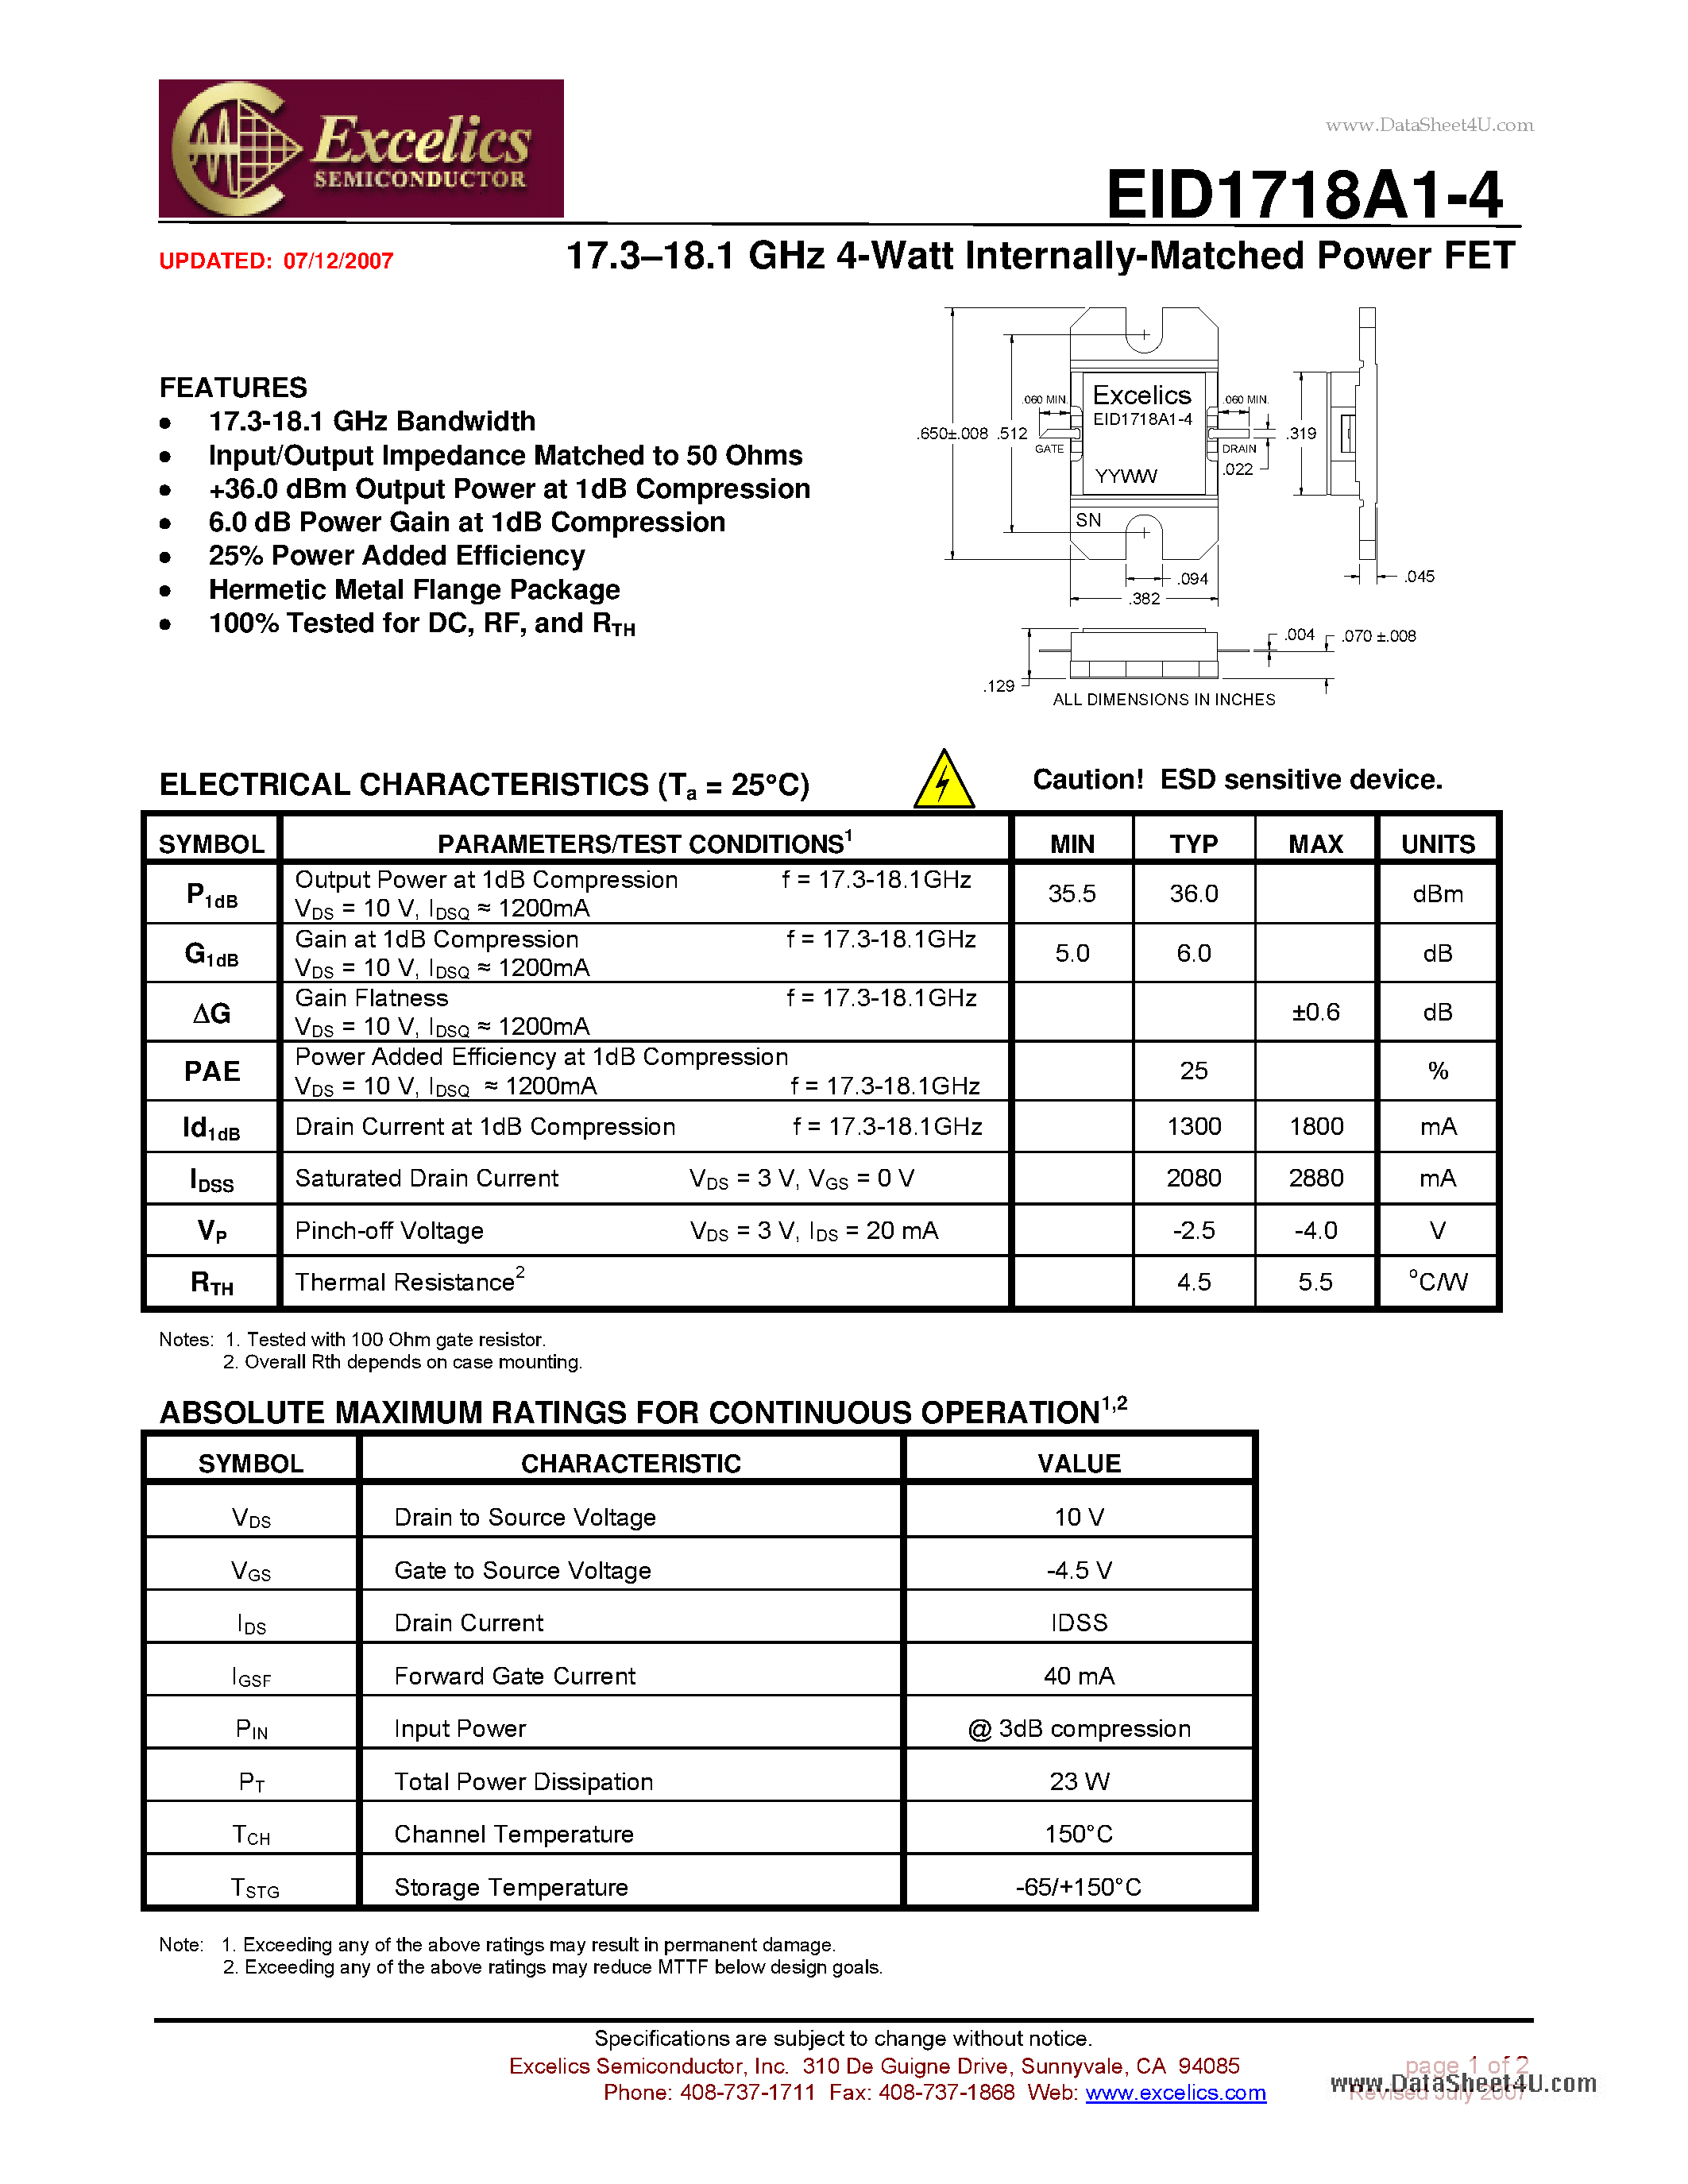 Datasheet EID1718A1-4 - 17.3-18.1 GHz 4-Watt Internally-Matched Power FET page 1